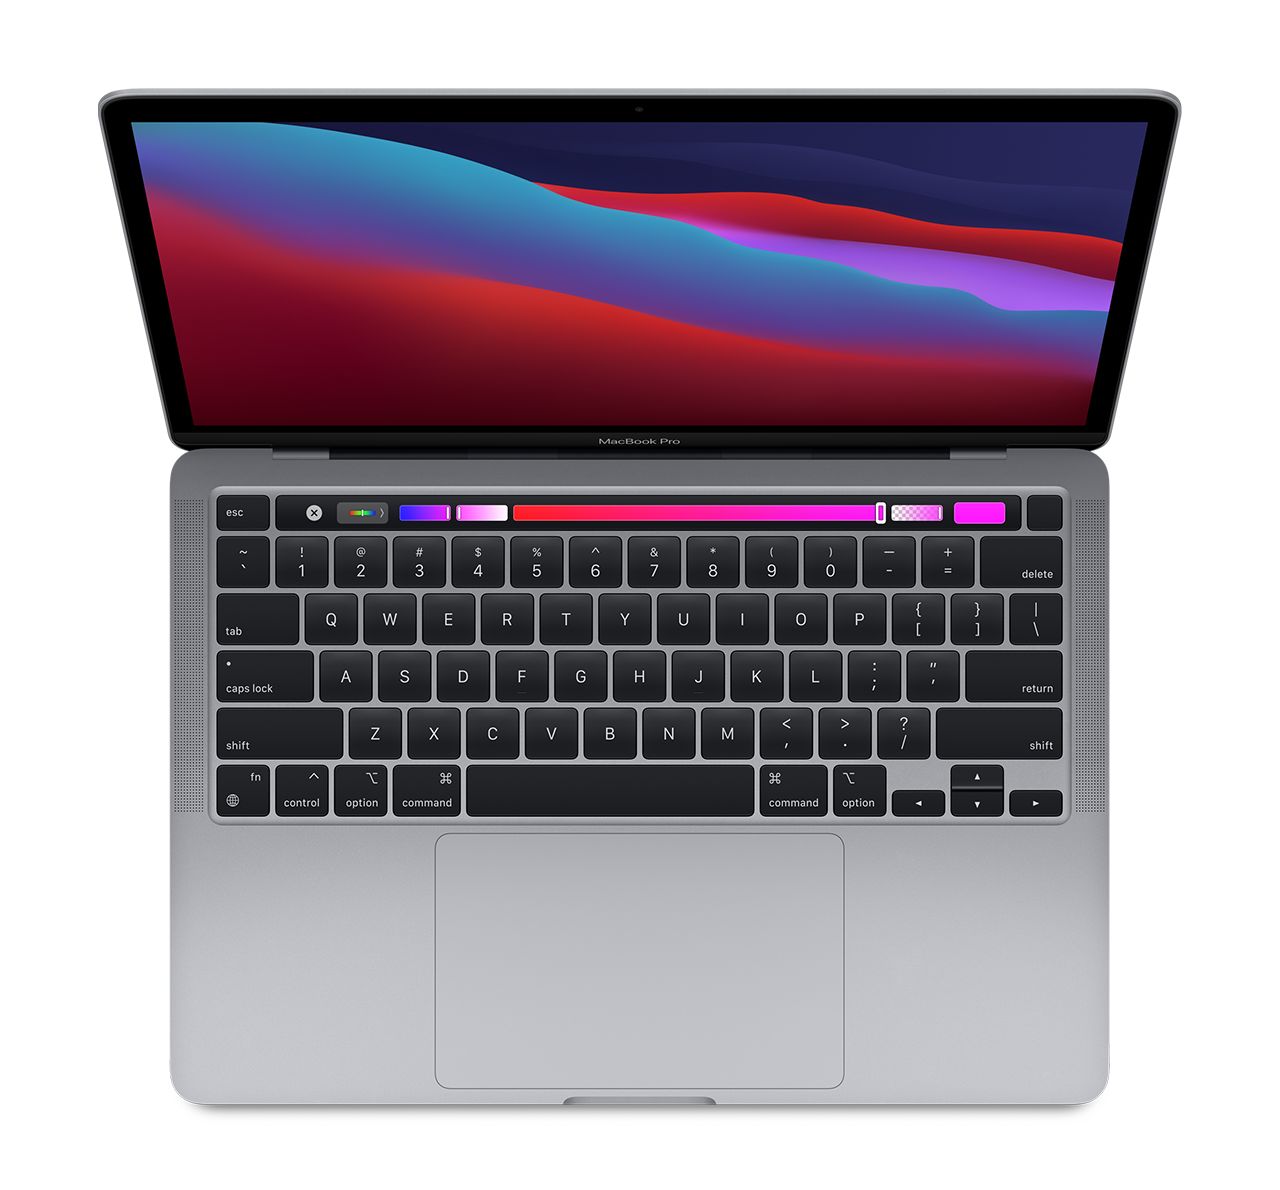 کیبورد MacBook Pro mydc2